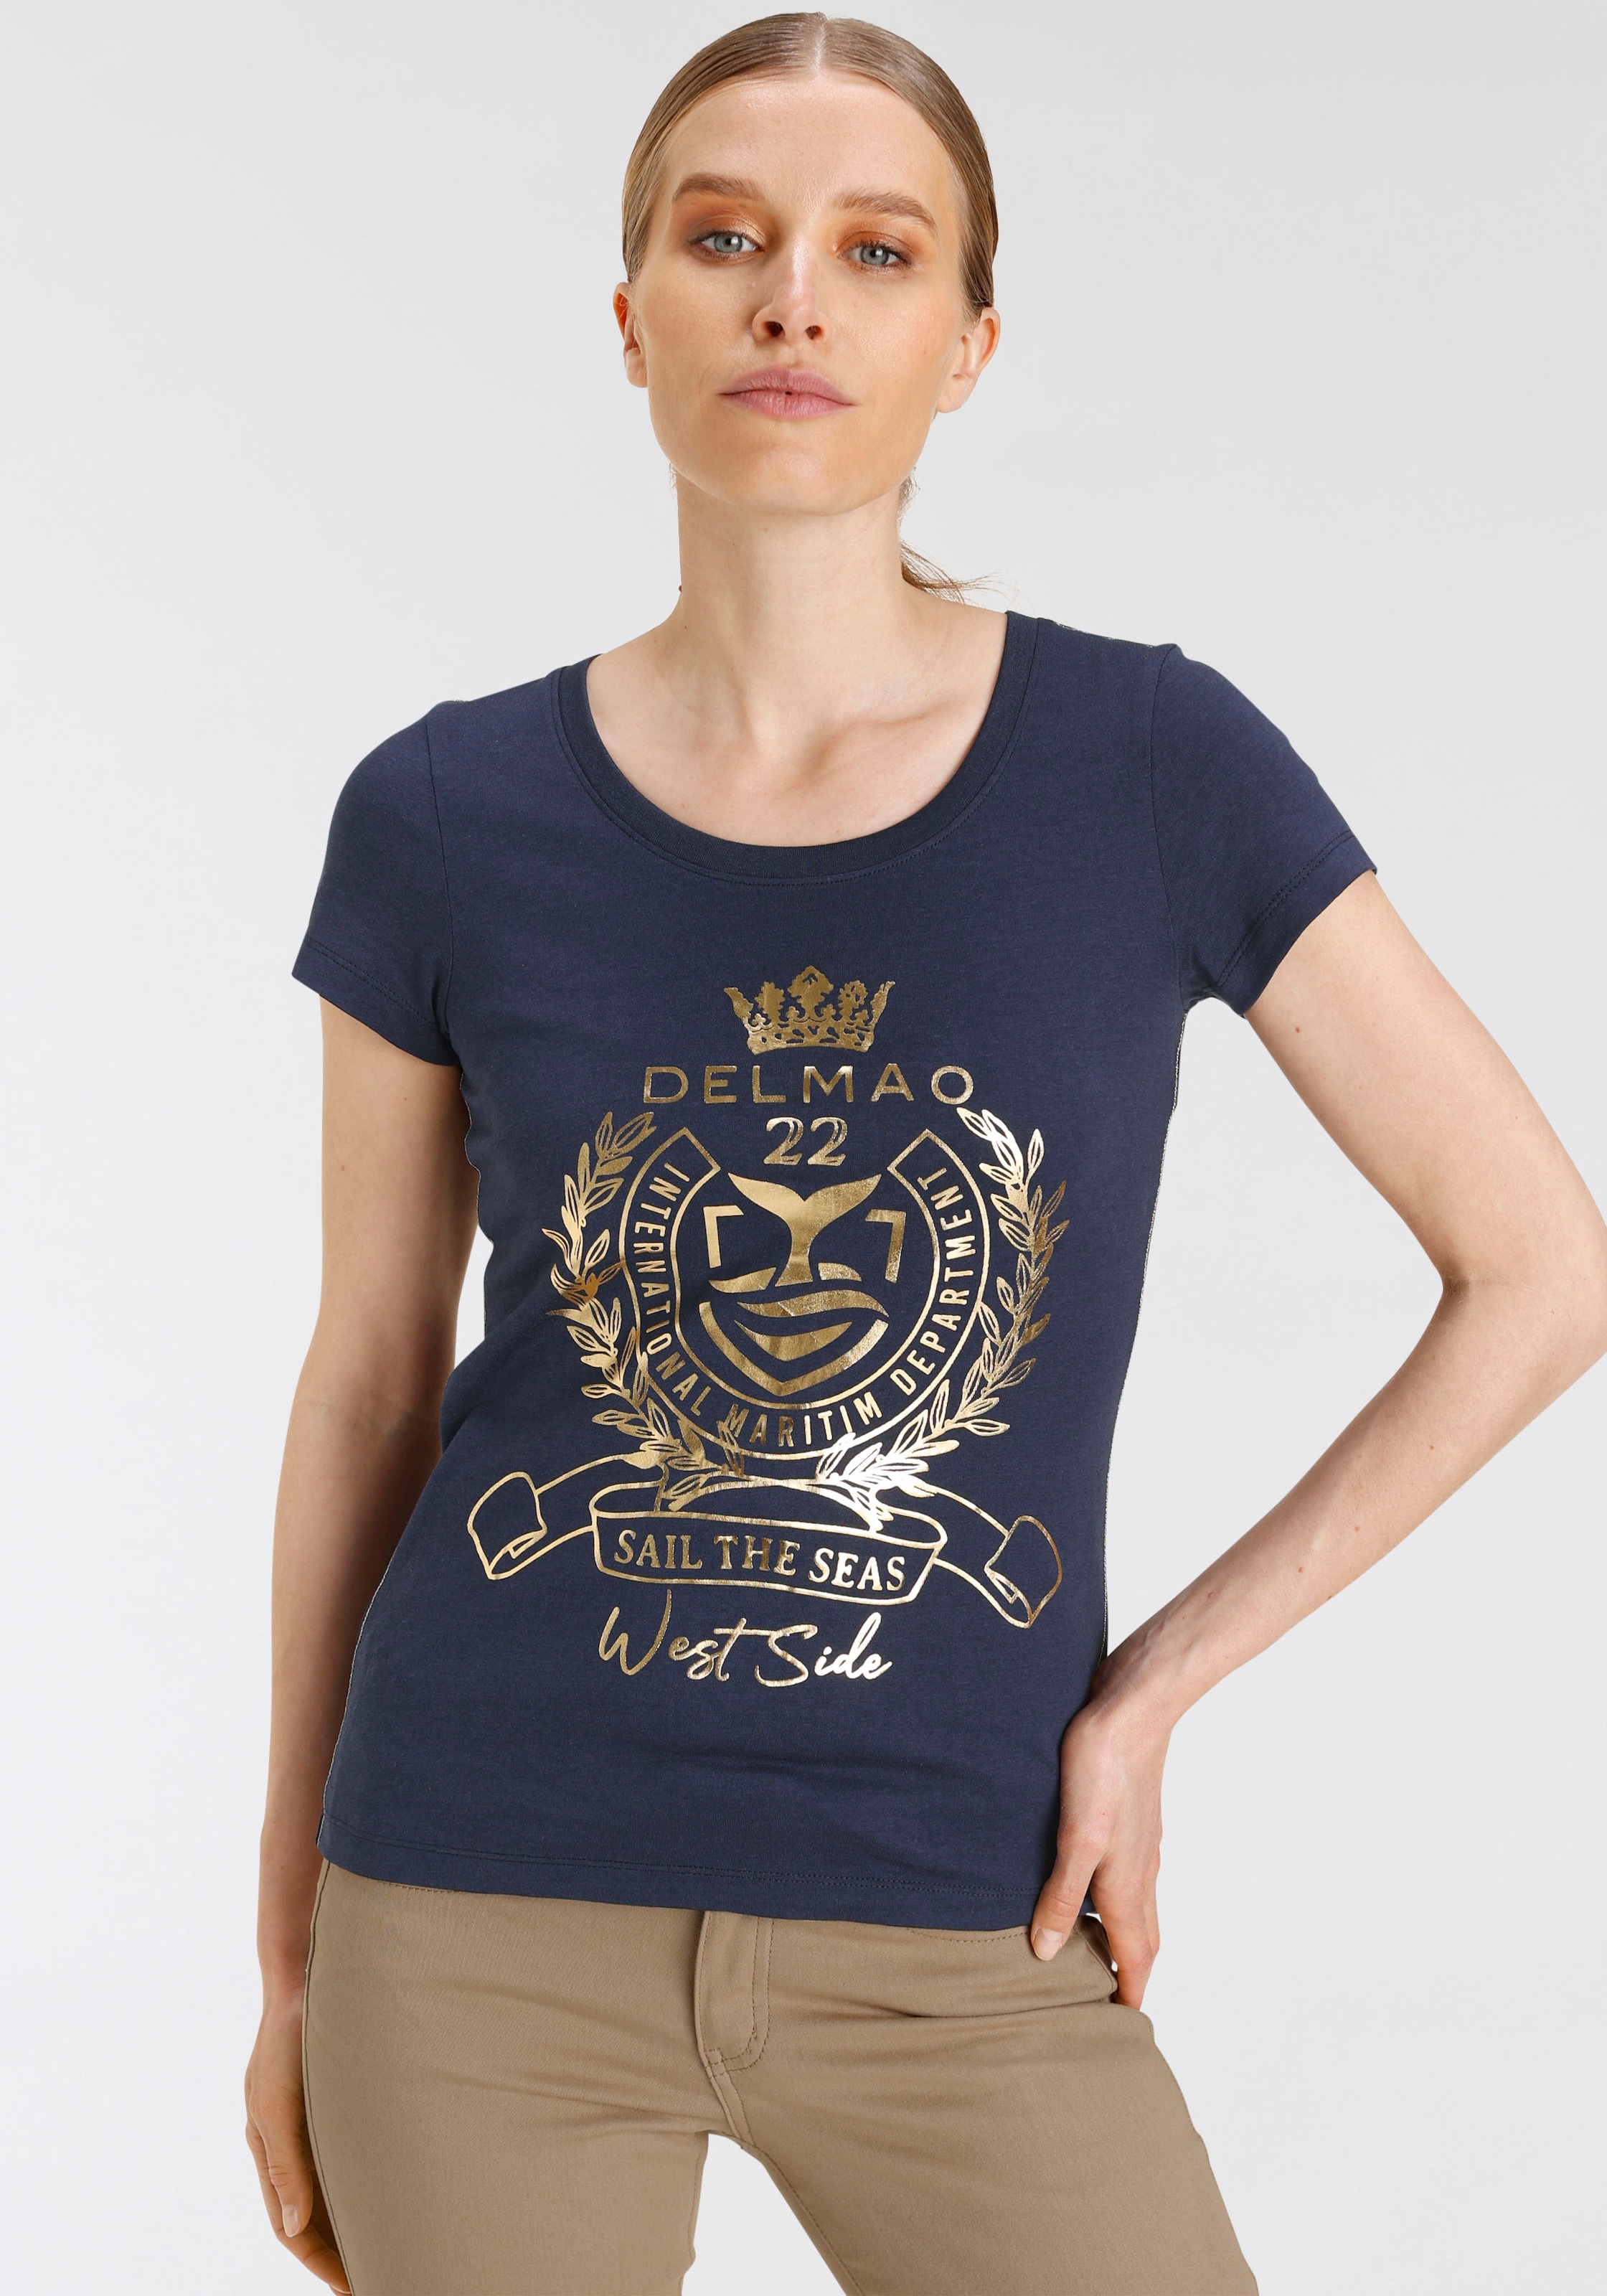 DELMAO T-Shirt, - ♕ bei MARKE! goldfarbenem Folienprint mit hochwertigem, NEUE